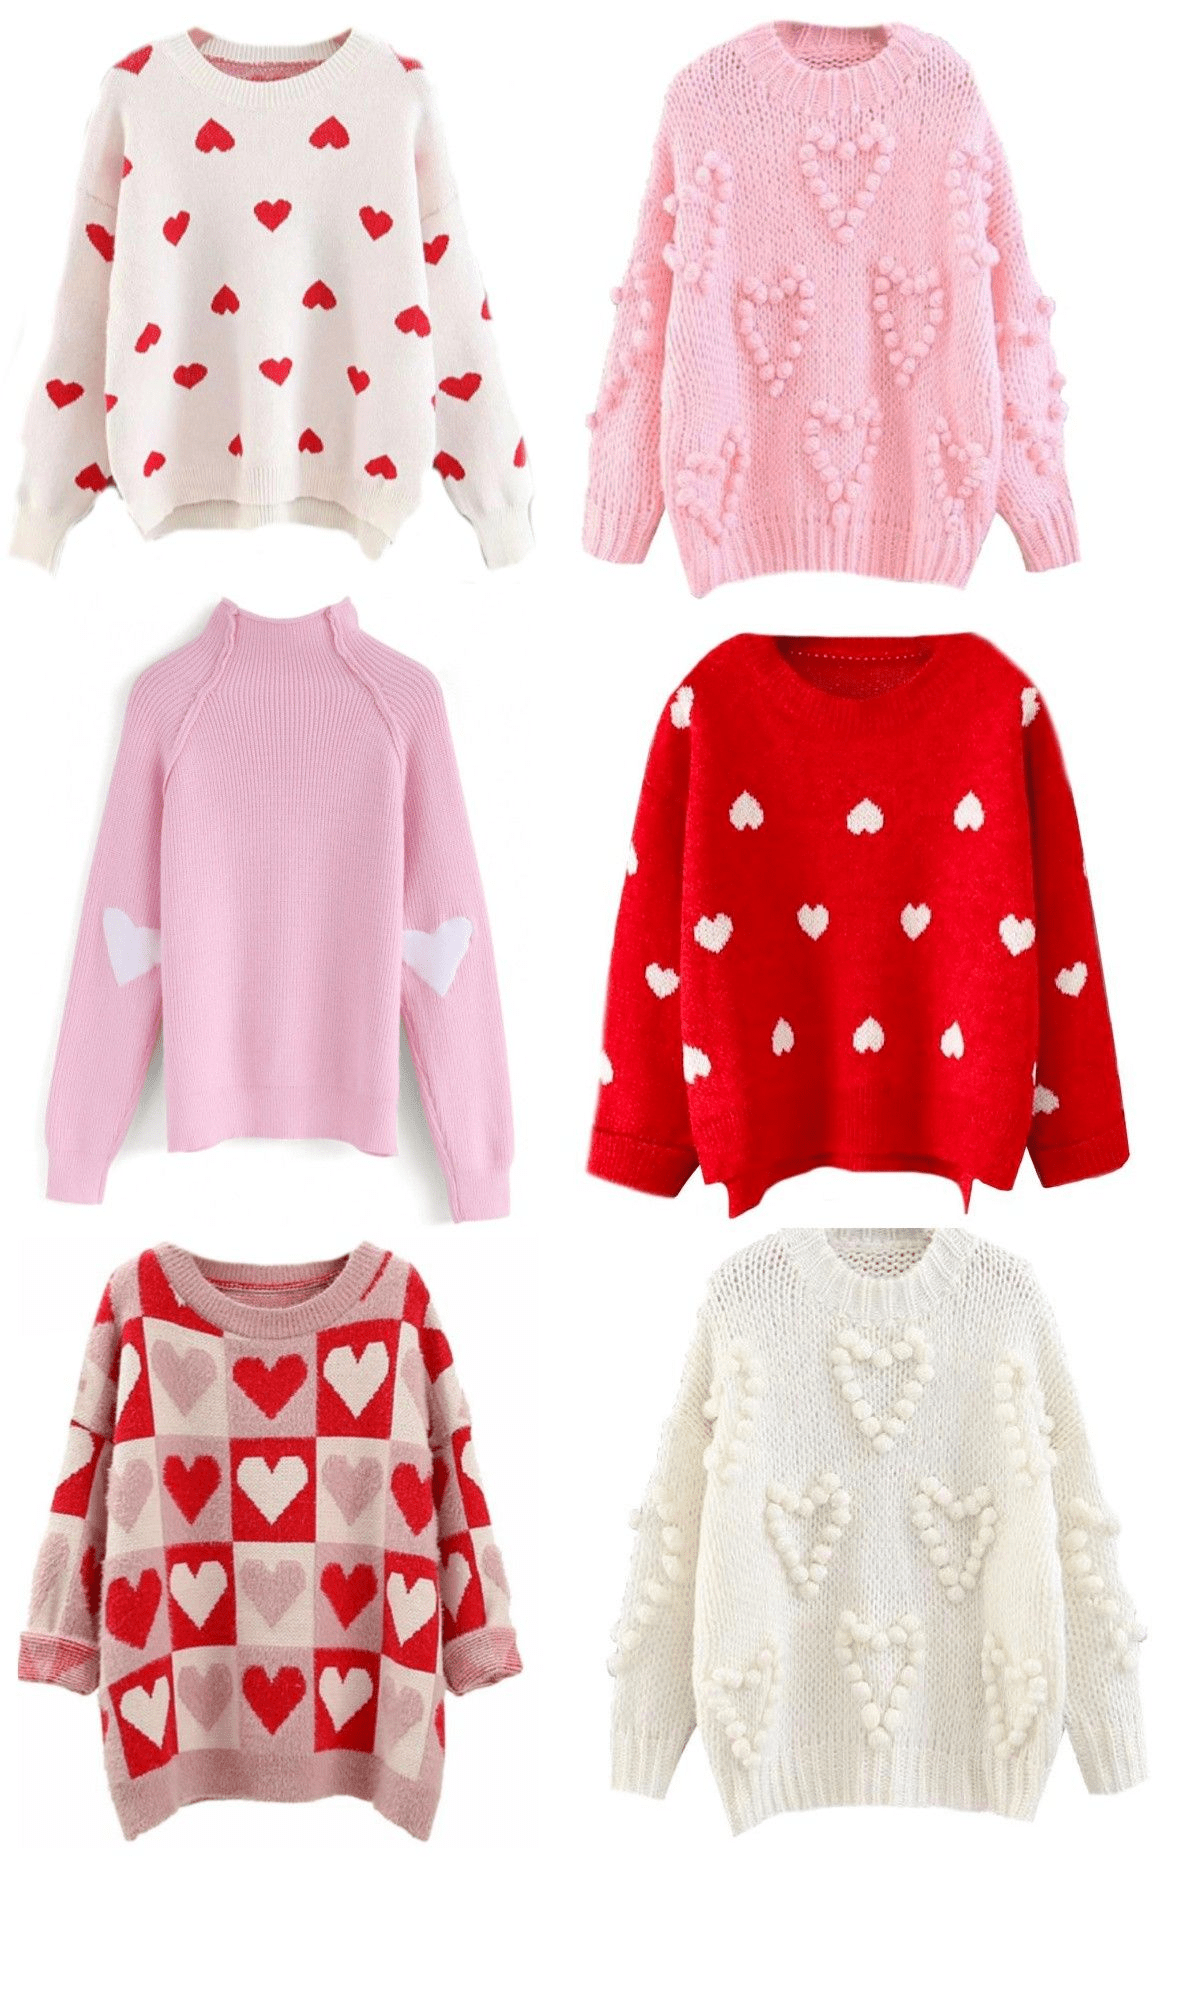 6 Best Valentine's Day Sweater